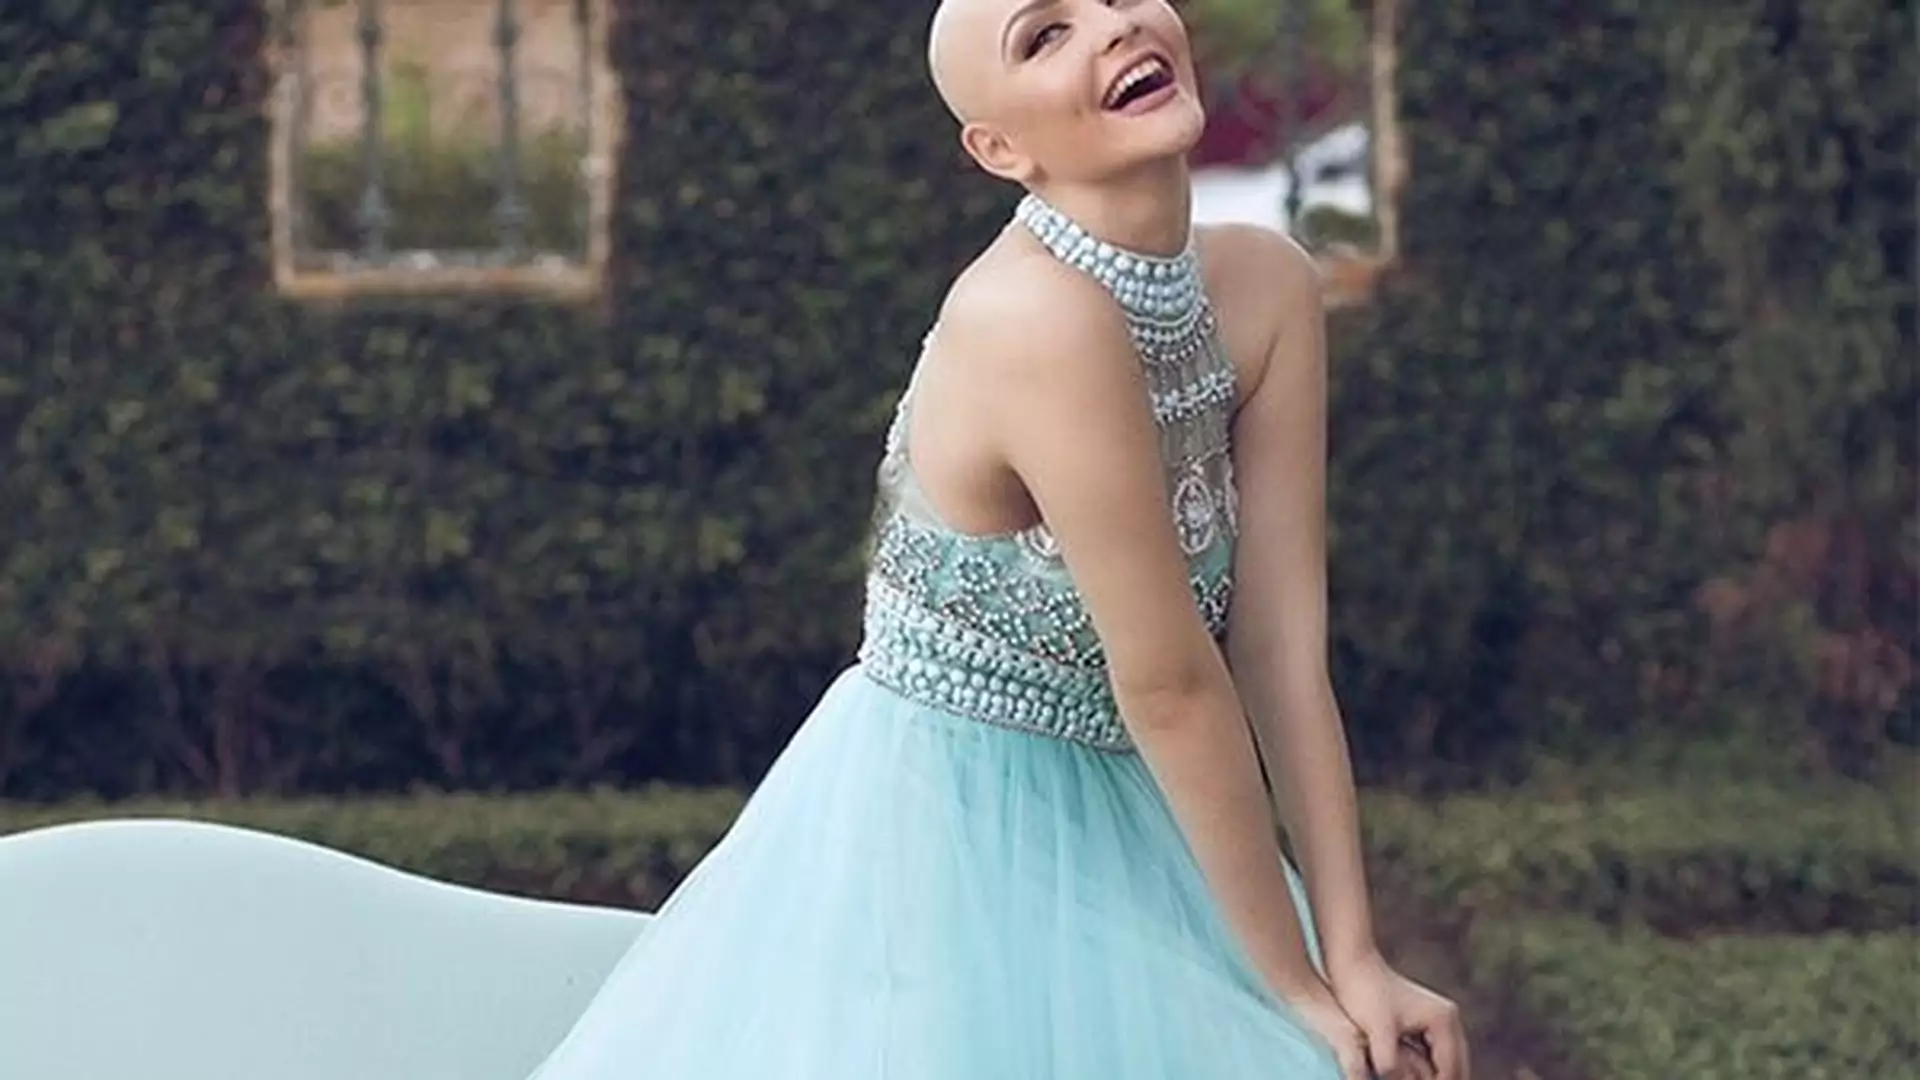 Nastolatka chora na raka pokazuje światu swoją bajeczną sesję zdjęciową - "Rak nie powstrzyma mnie od bycia księżniczką".